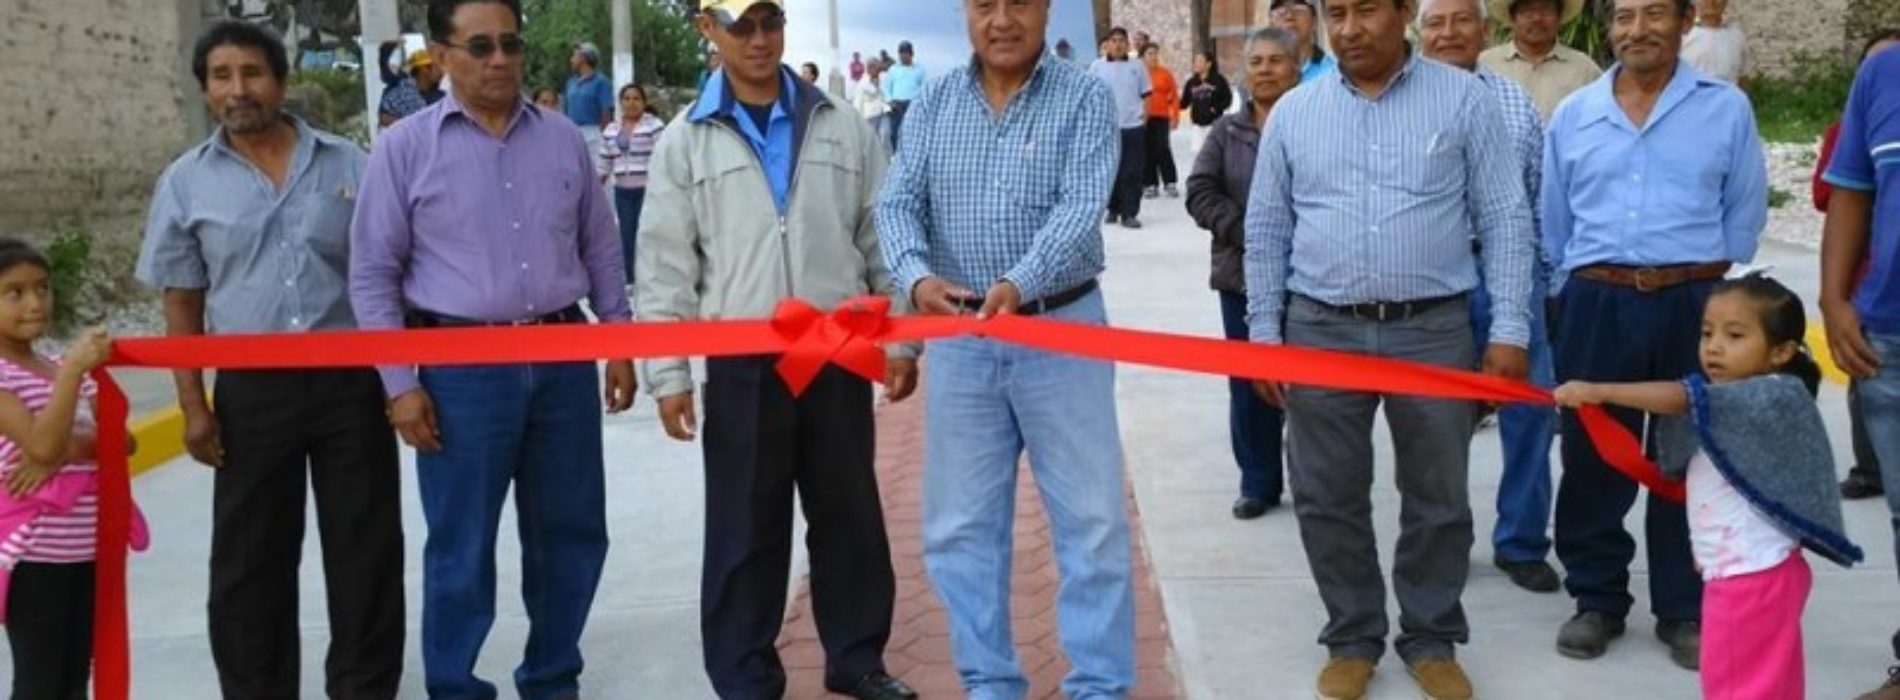 #Oaxaca Inauguran Edil de Sayultepec y Mario Montesinos pavimentación de calle Benito Juárez 